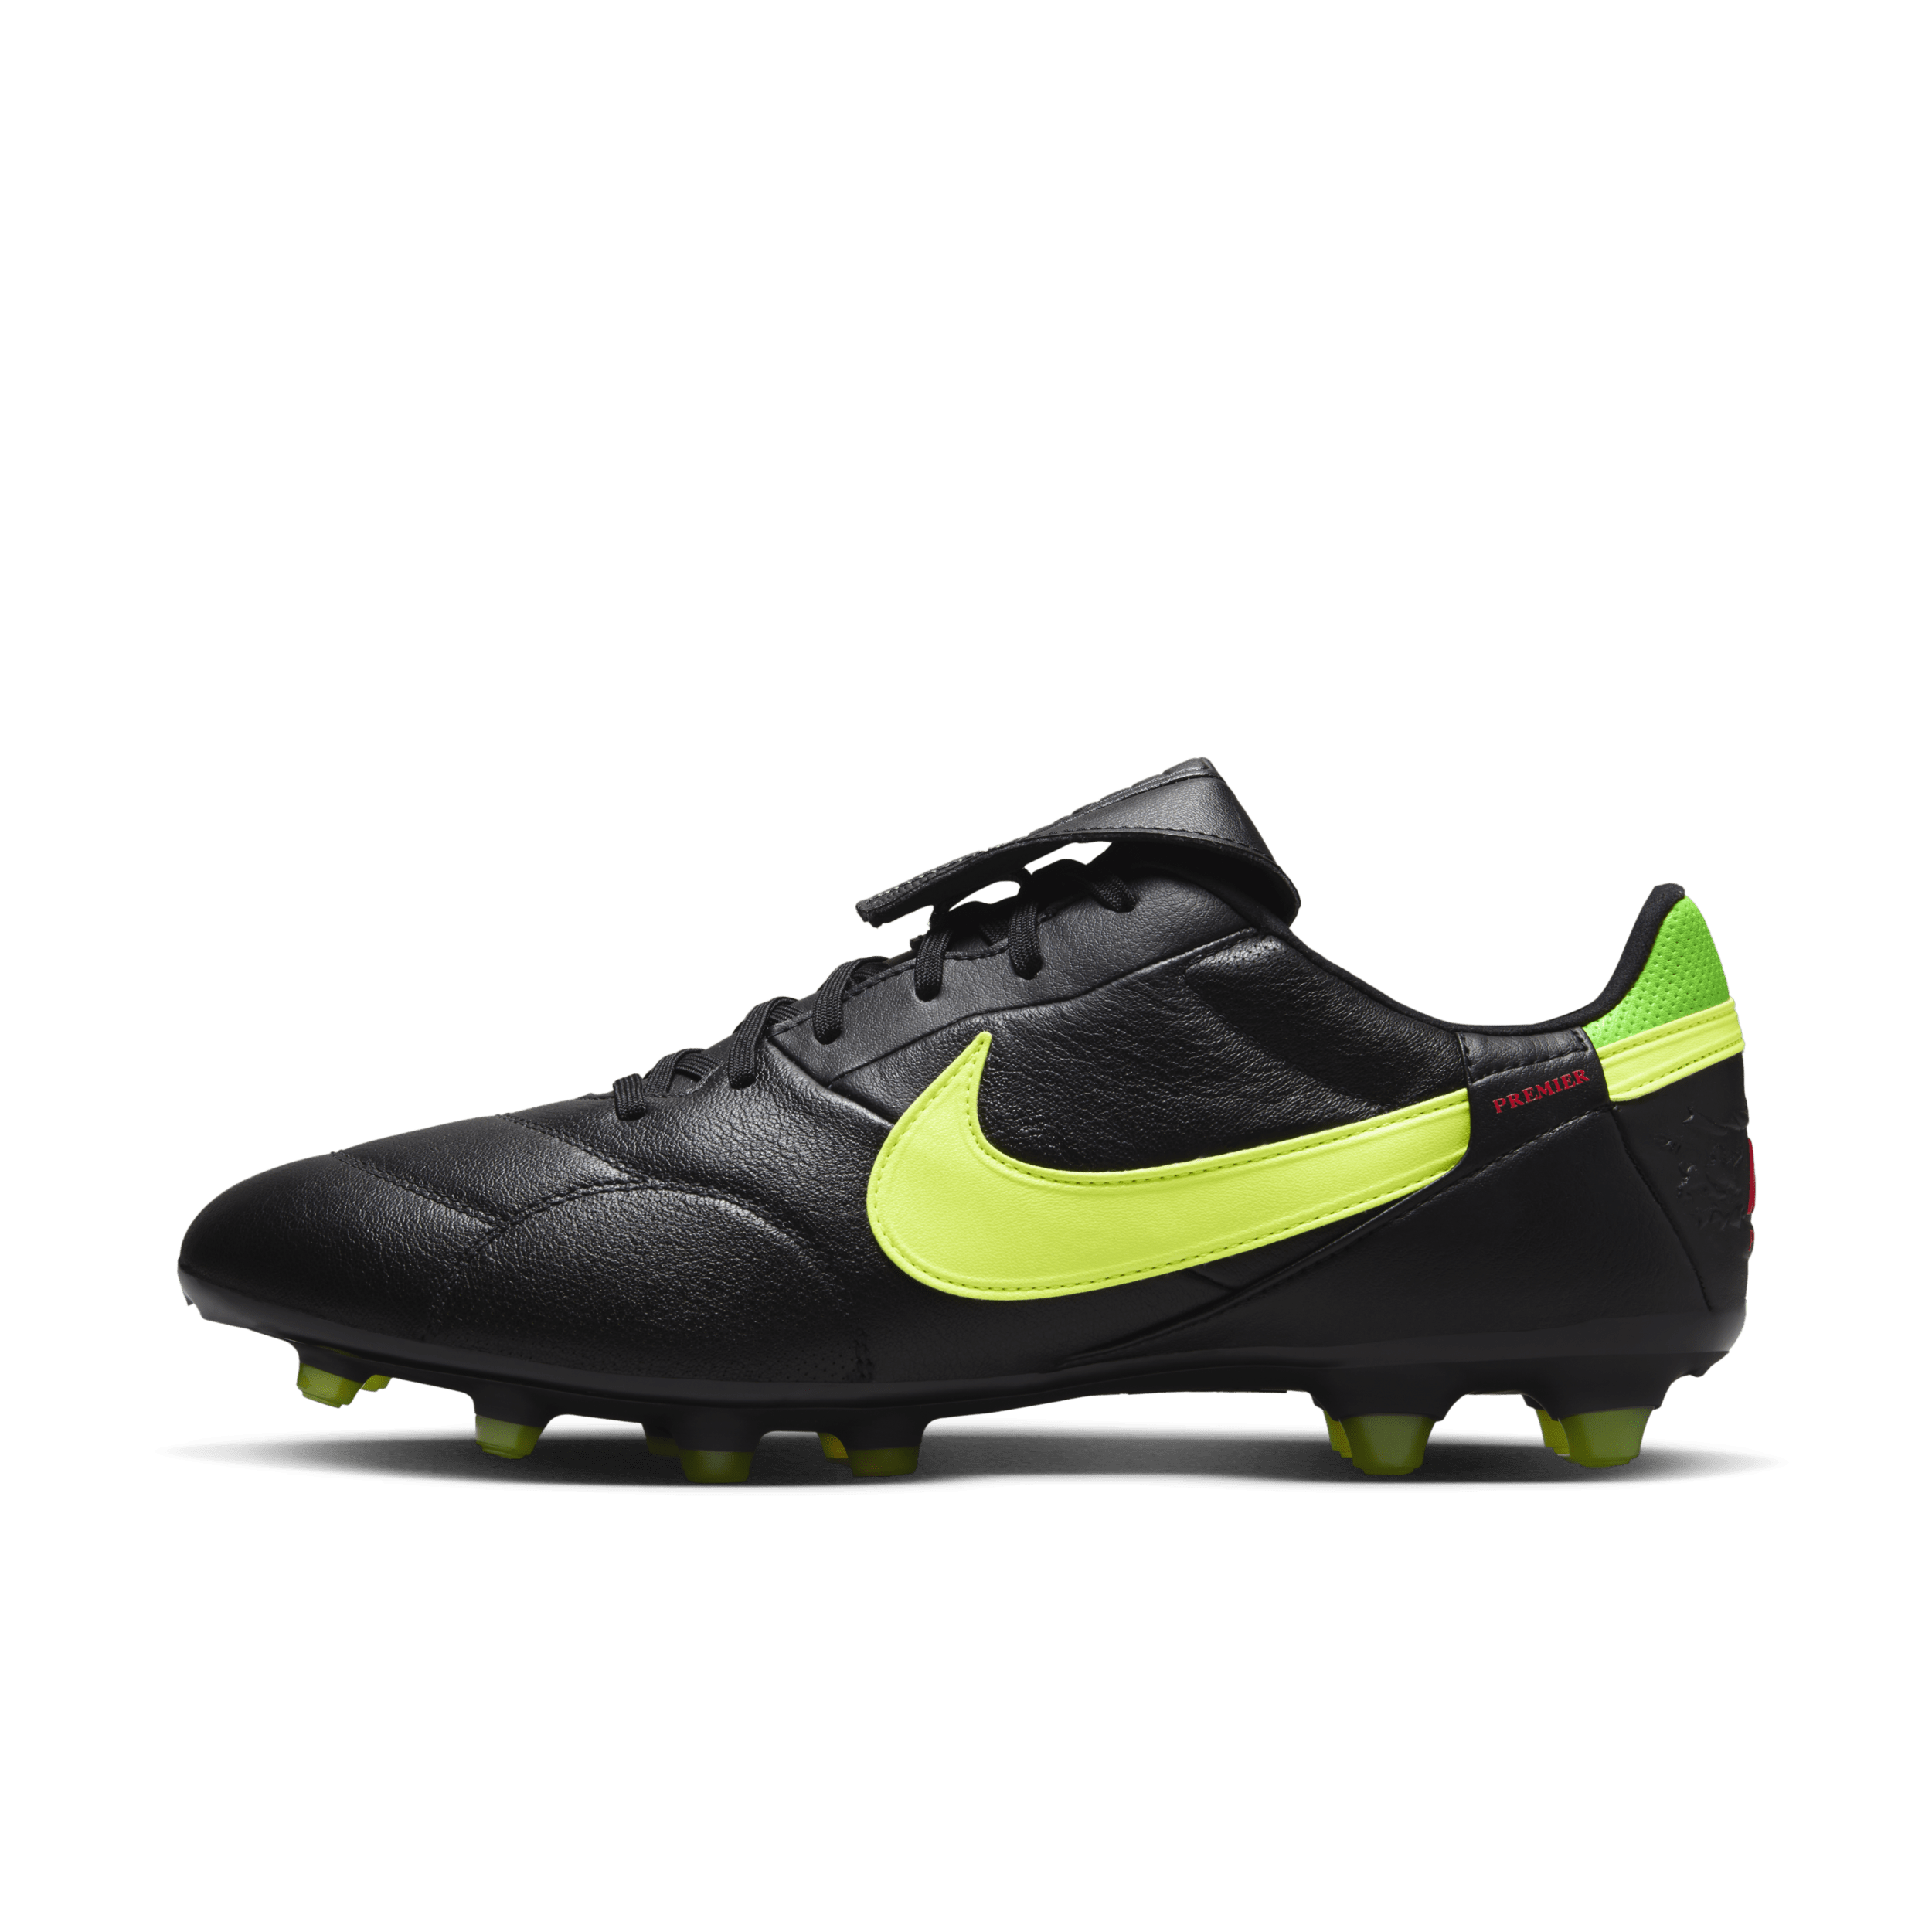 NikePremier 3 low-top voetbalschoenen (stevige ondergronden) - Zwart